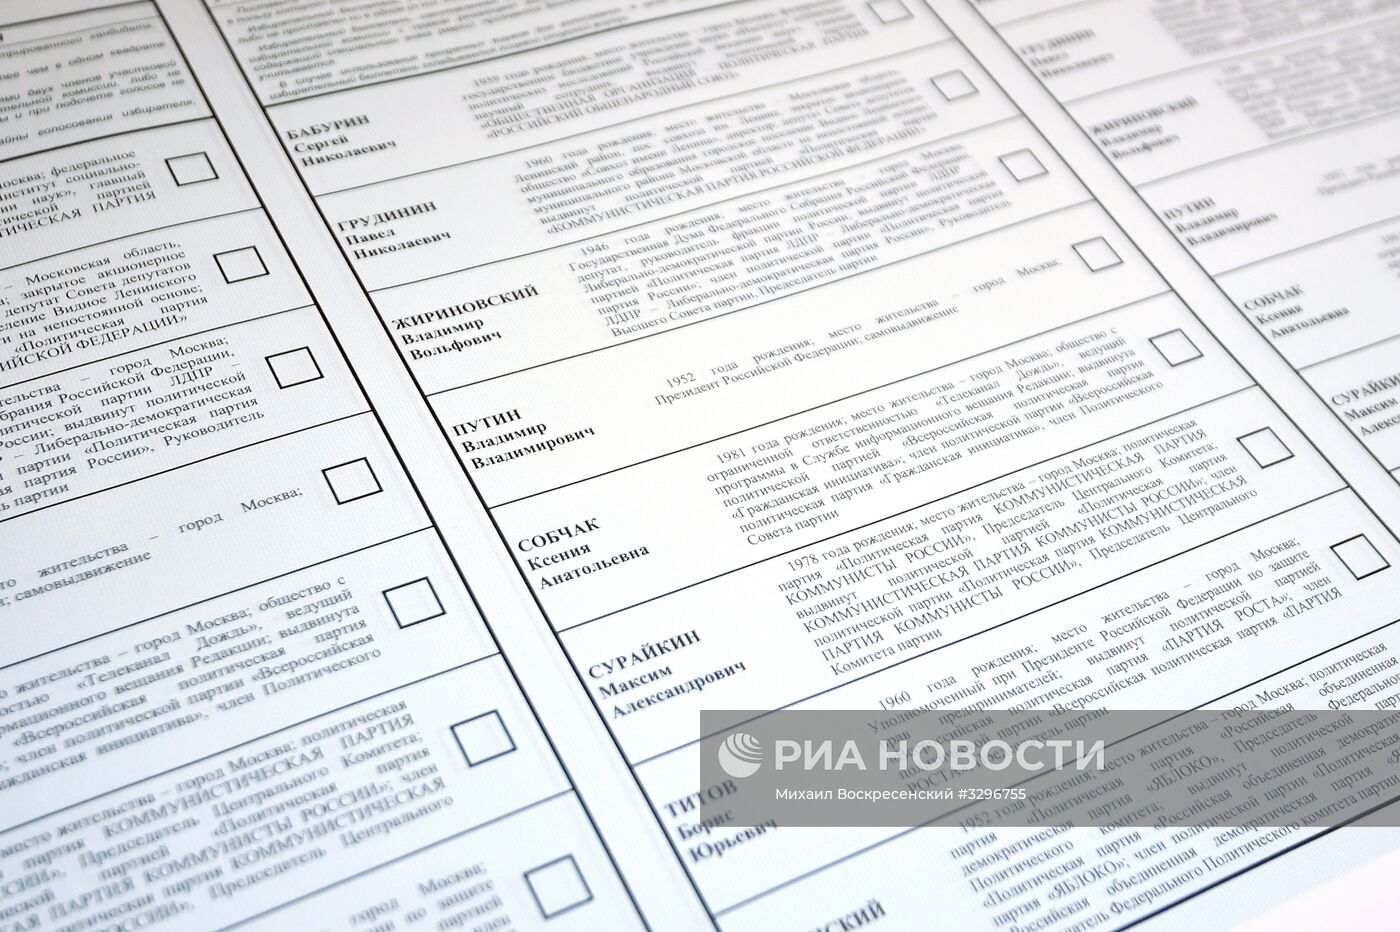 Печать избирательных бюллетеней для выборов президента РФ